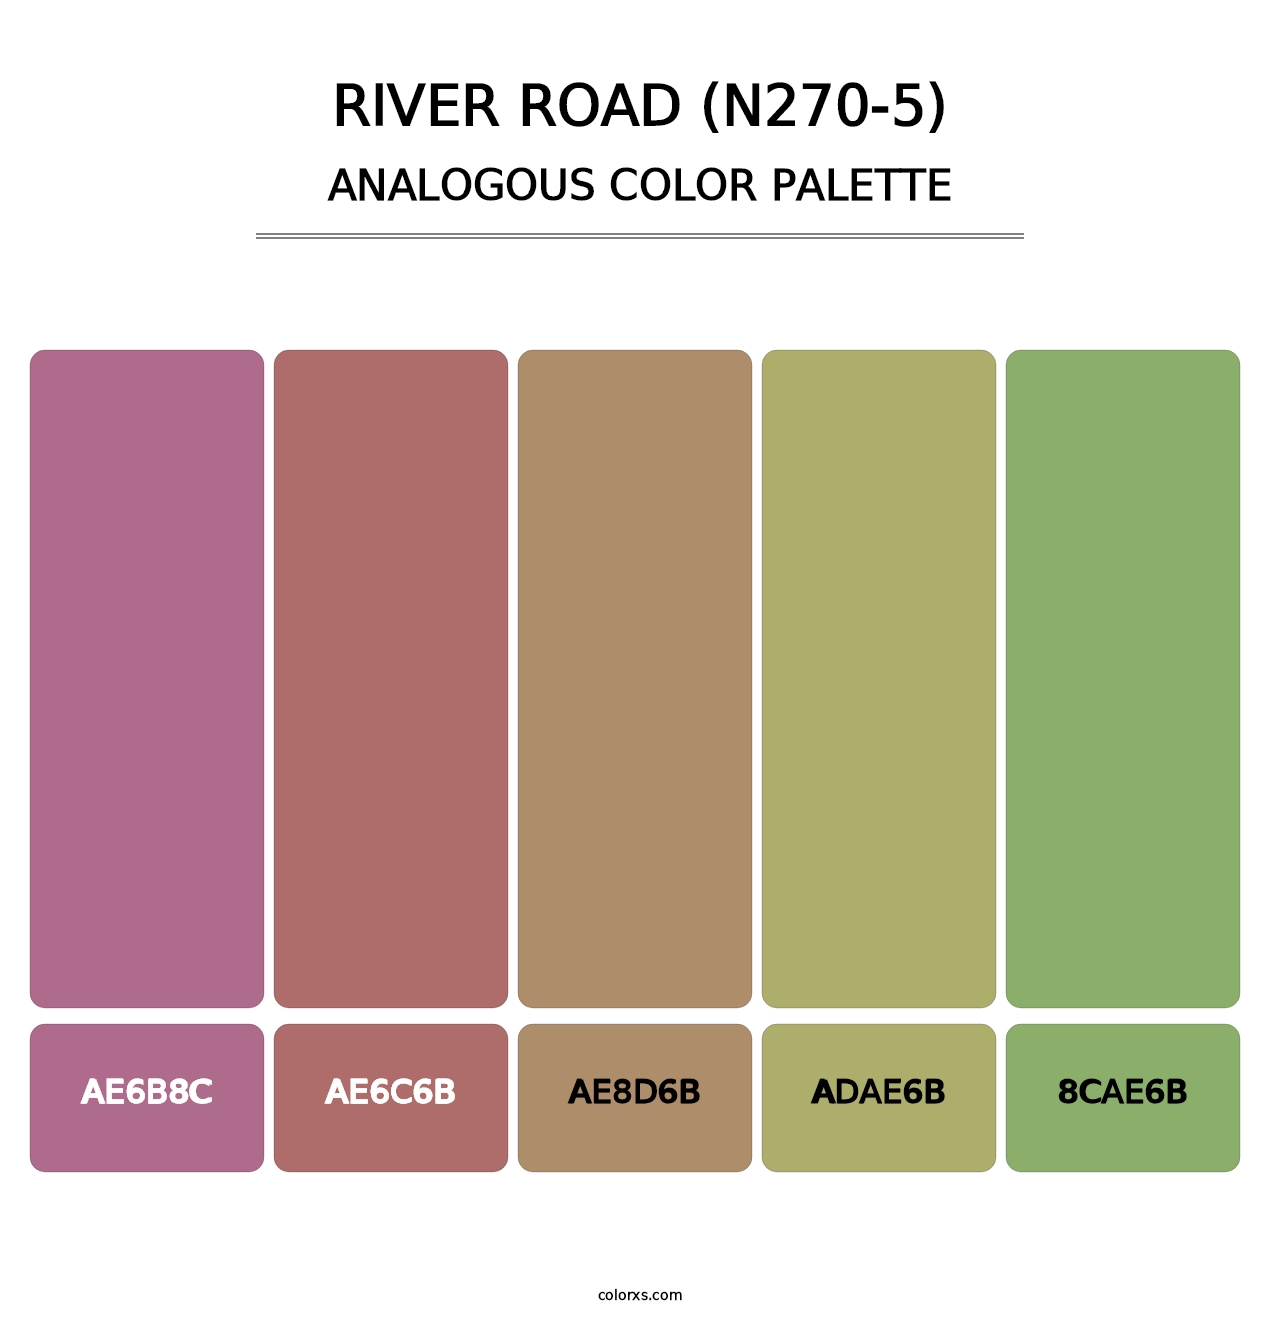 River Road (N270-5) - Analogous Color Palette